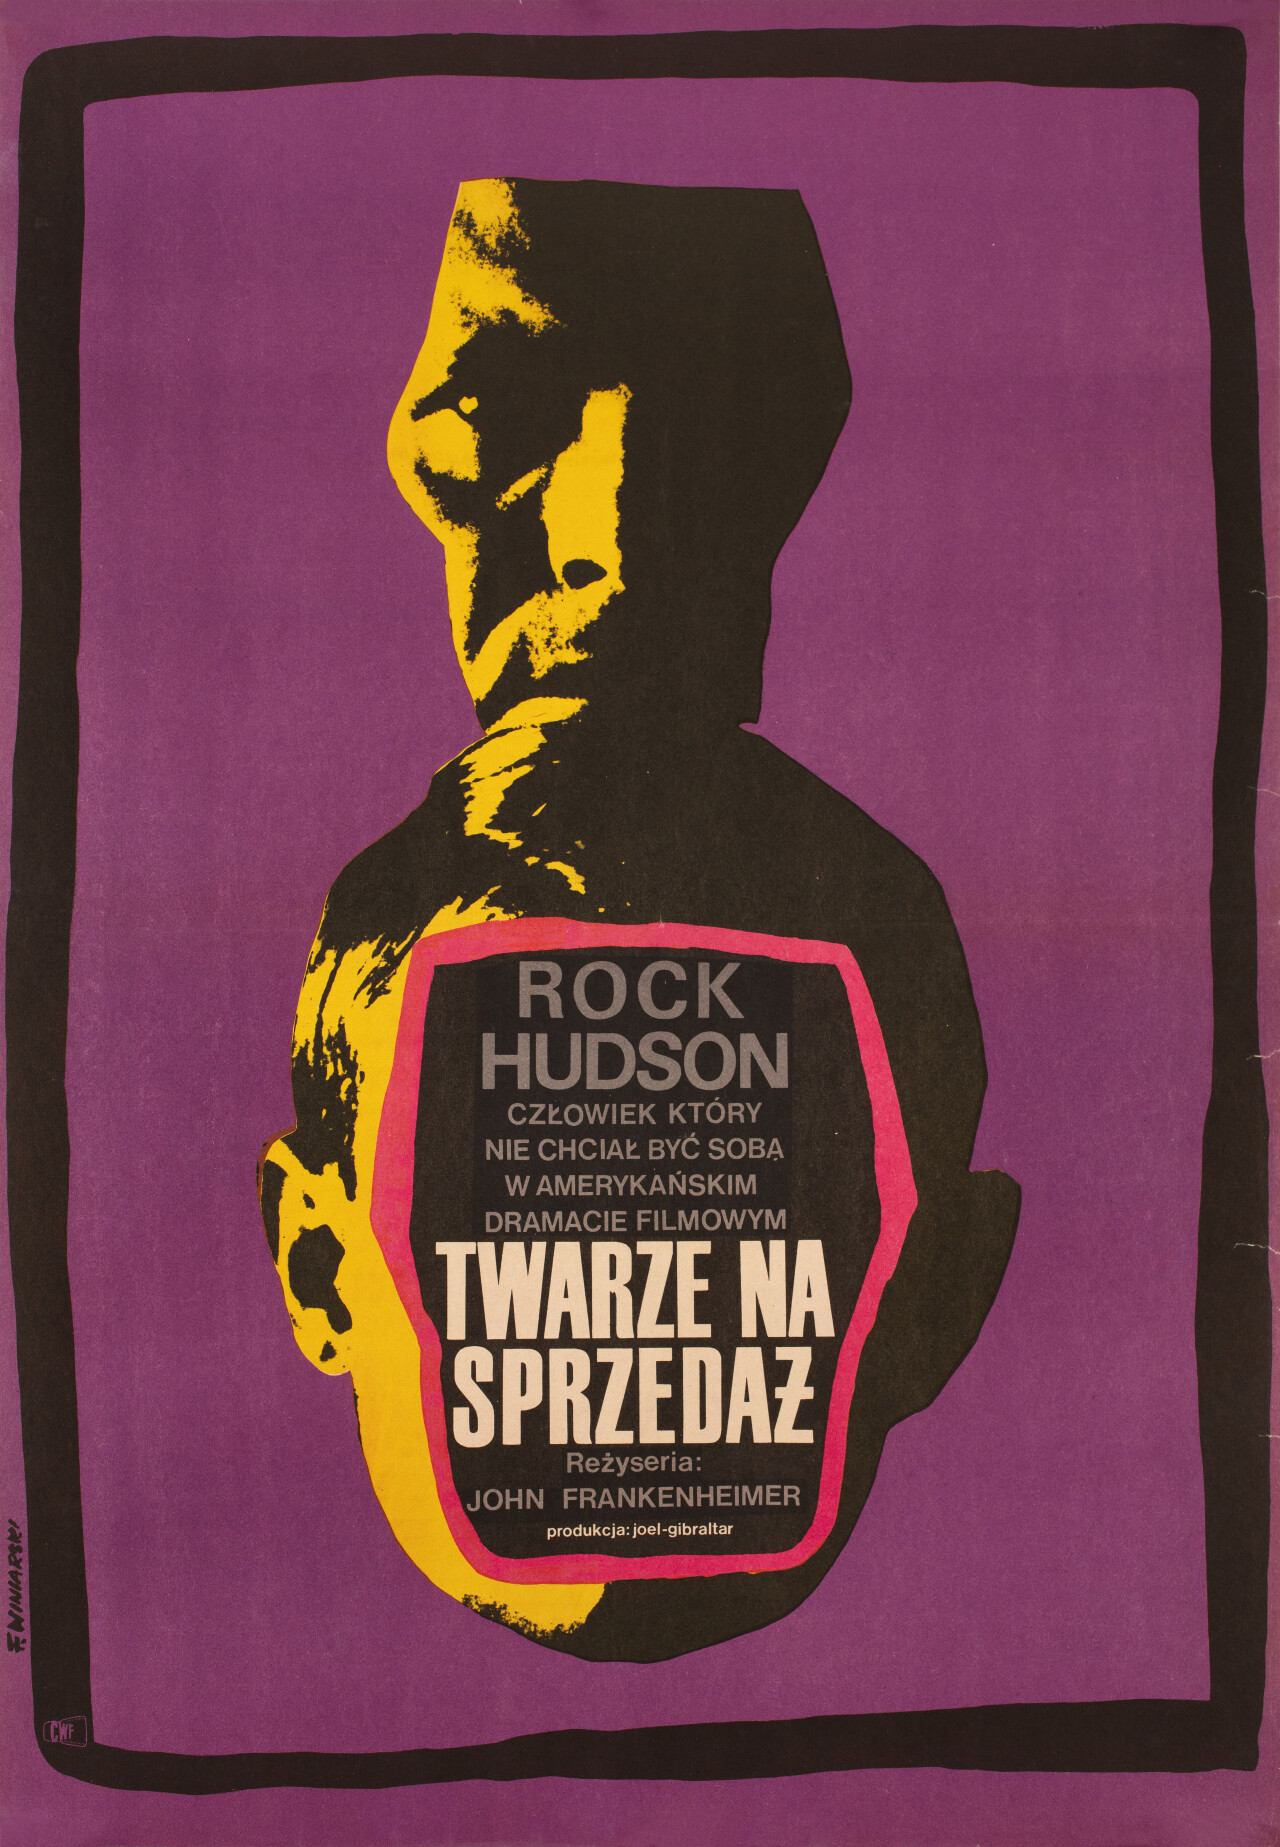 Второй раз (Seconds, 1966), режиссёр Джон Франкенхаймер, польский постер к фильму, автор Францишек Винярский (ужасы, 1967 год)